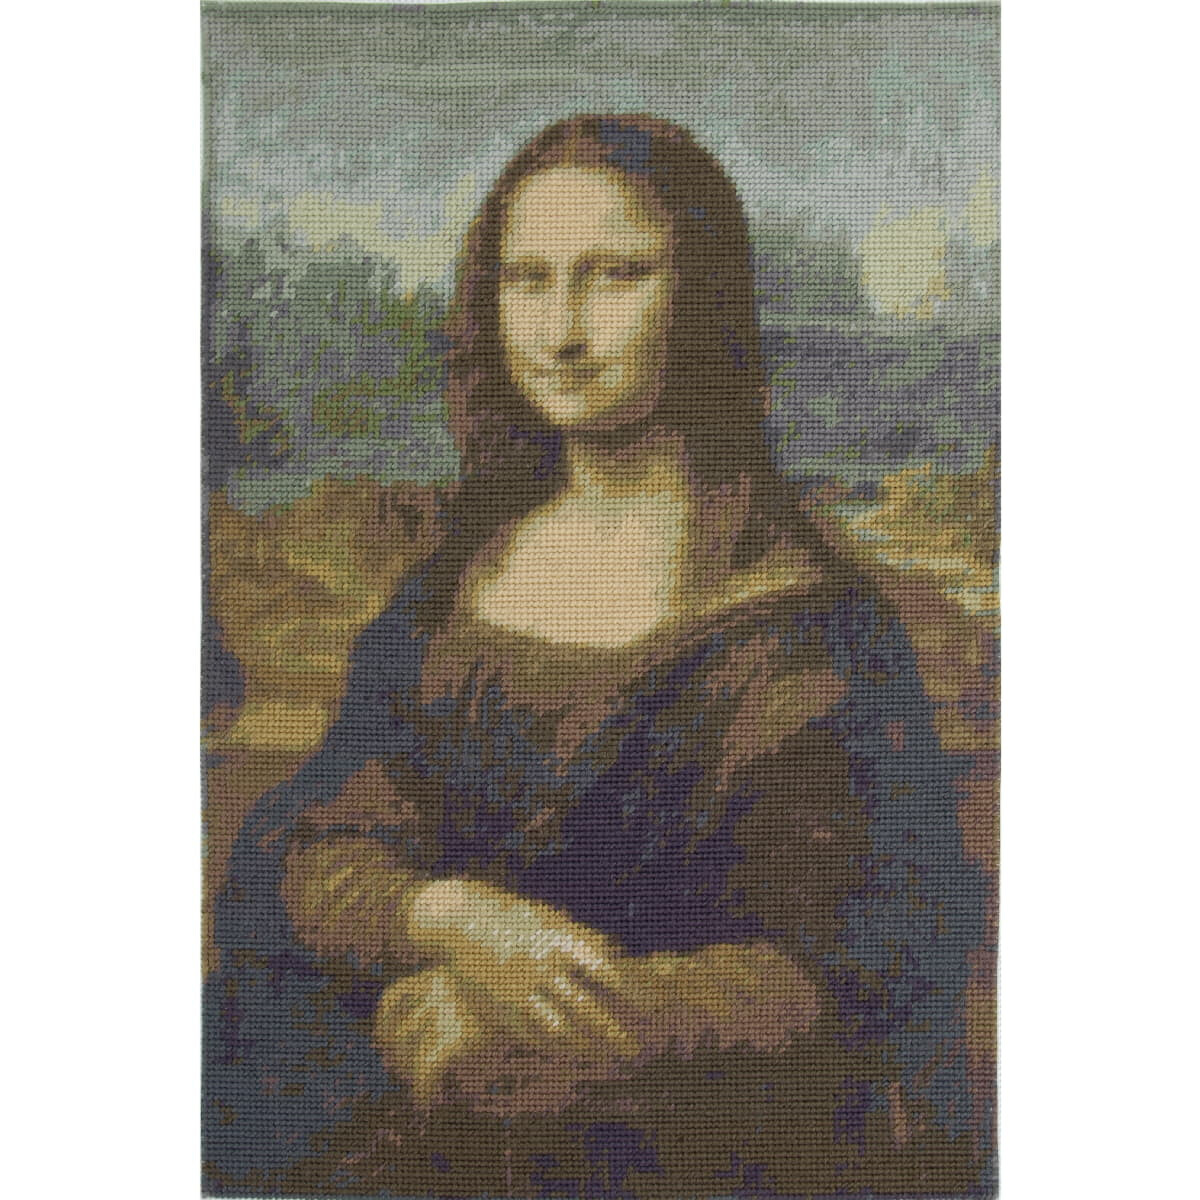 Kit de broderie tapisserie DMC "Louvre Mona...